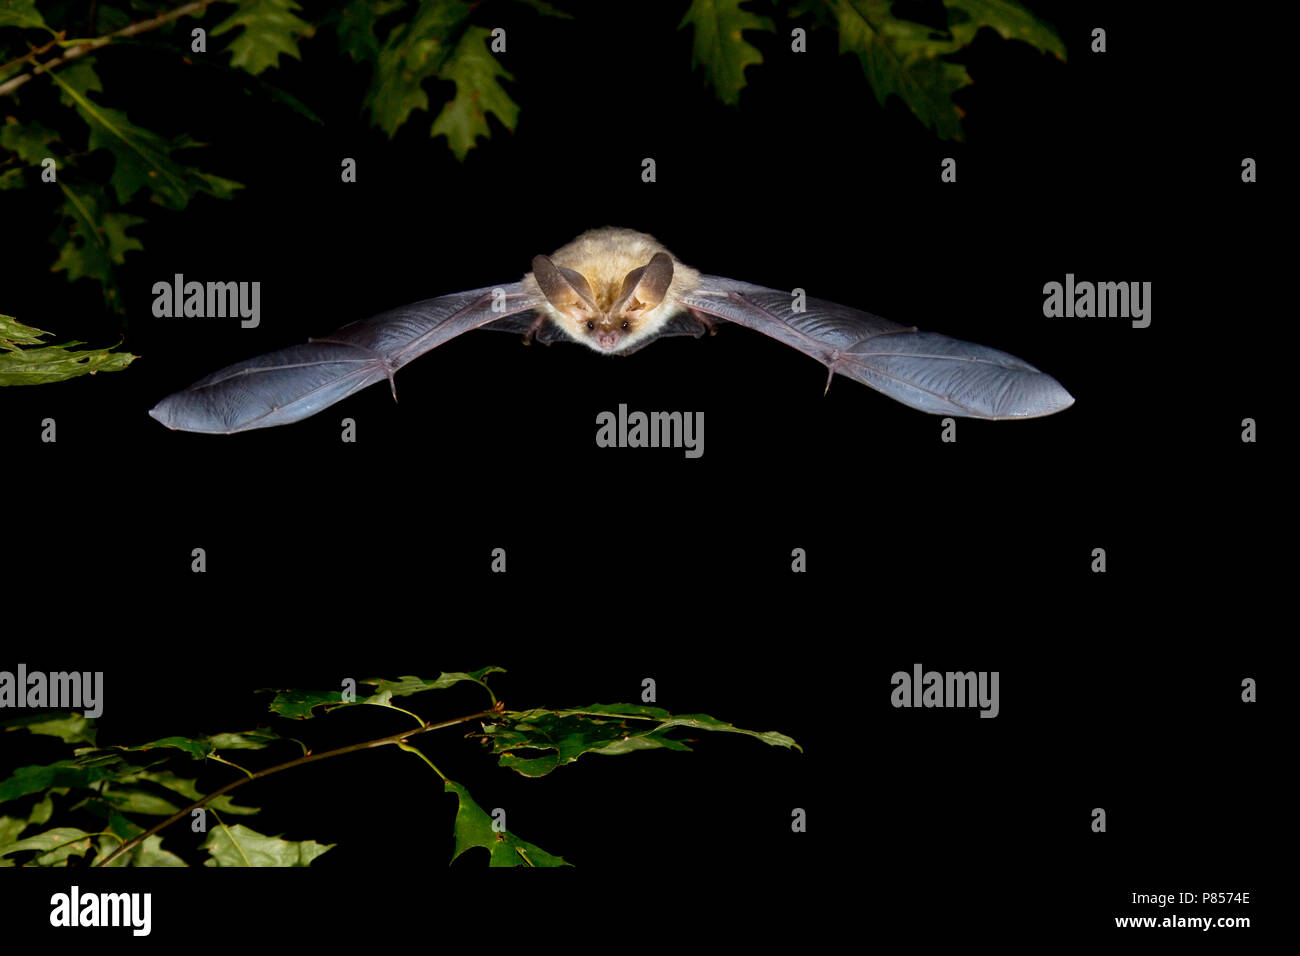 Gewone grootoorvleermuis vliegend, Brown long-eared bat flying Stock Photo